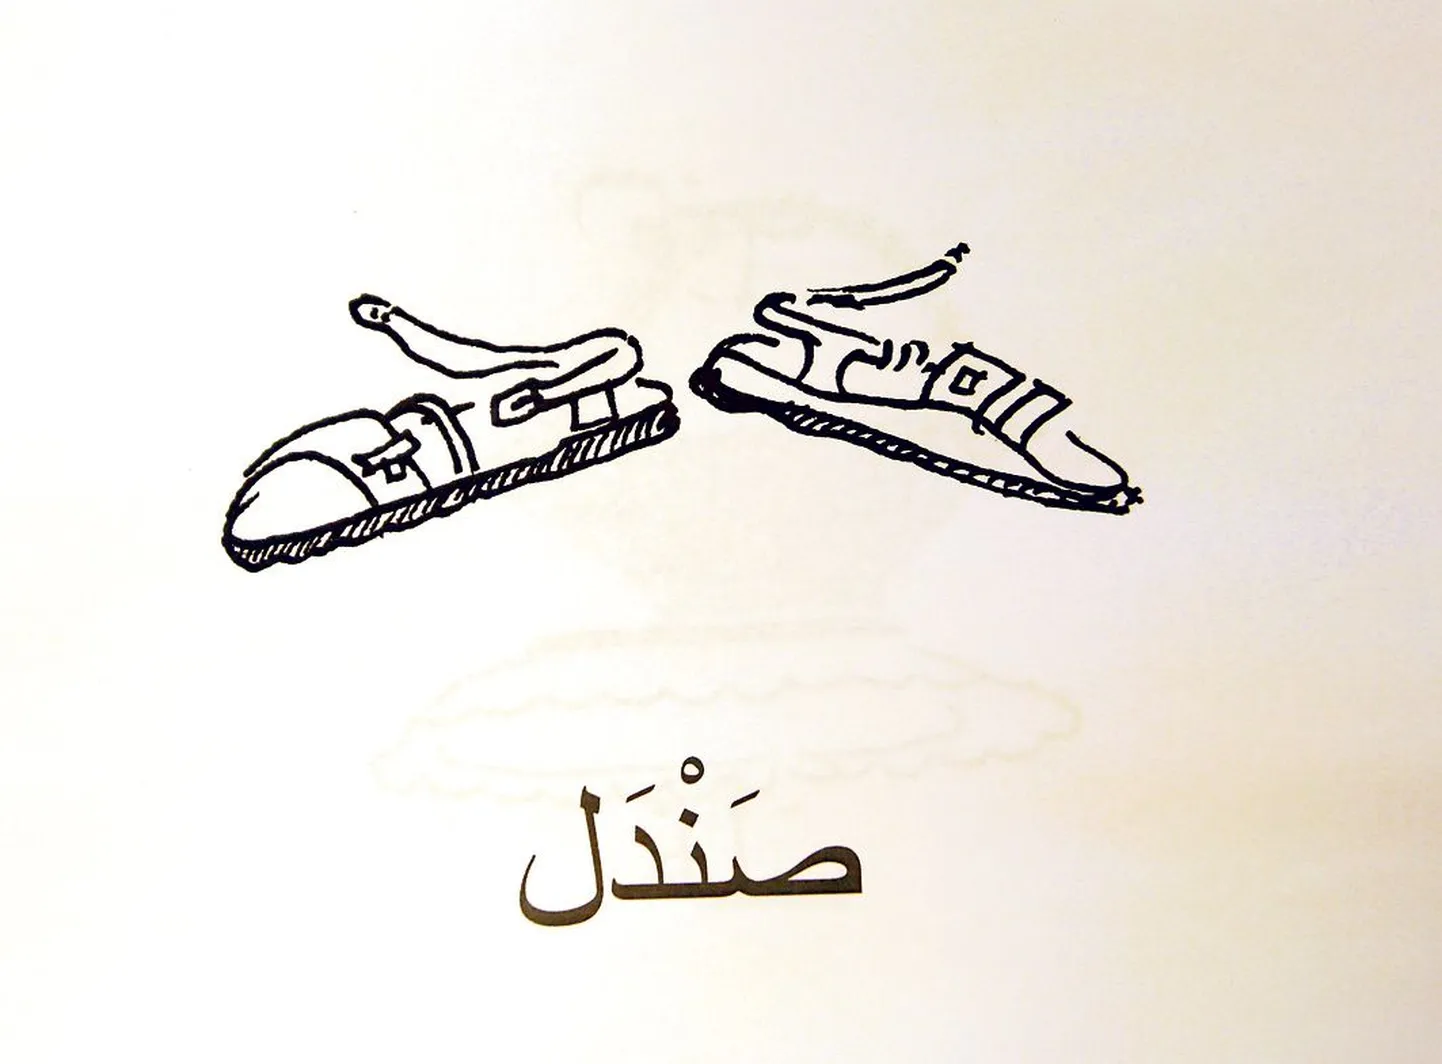 Sandaalid kirjutatakse araabia keeles nii. Loe paremalt vasakule!